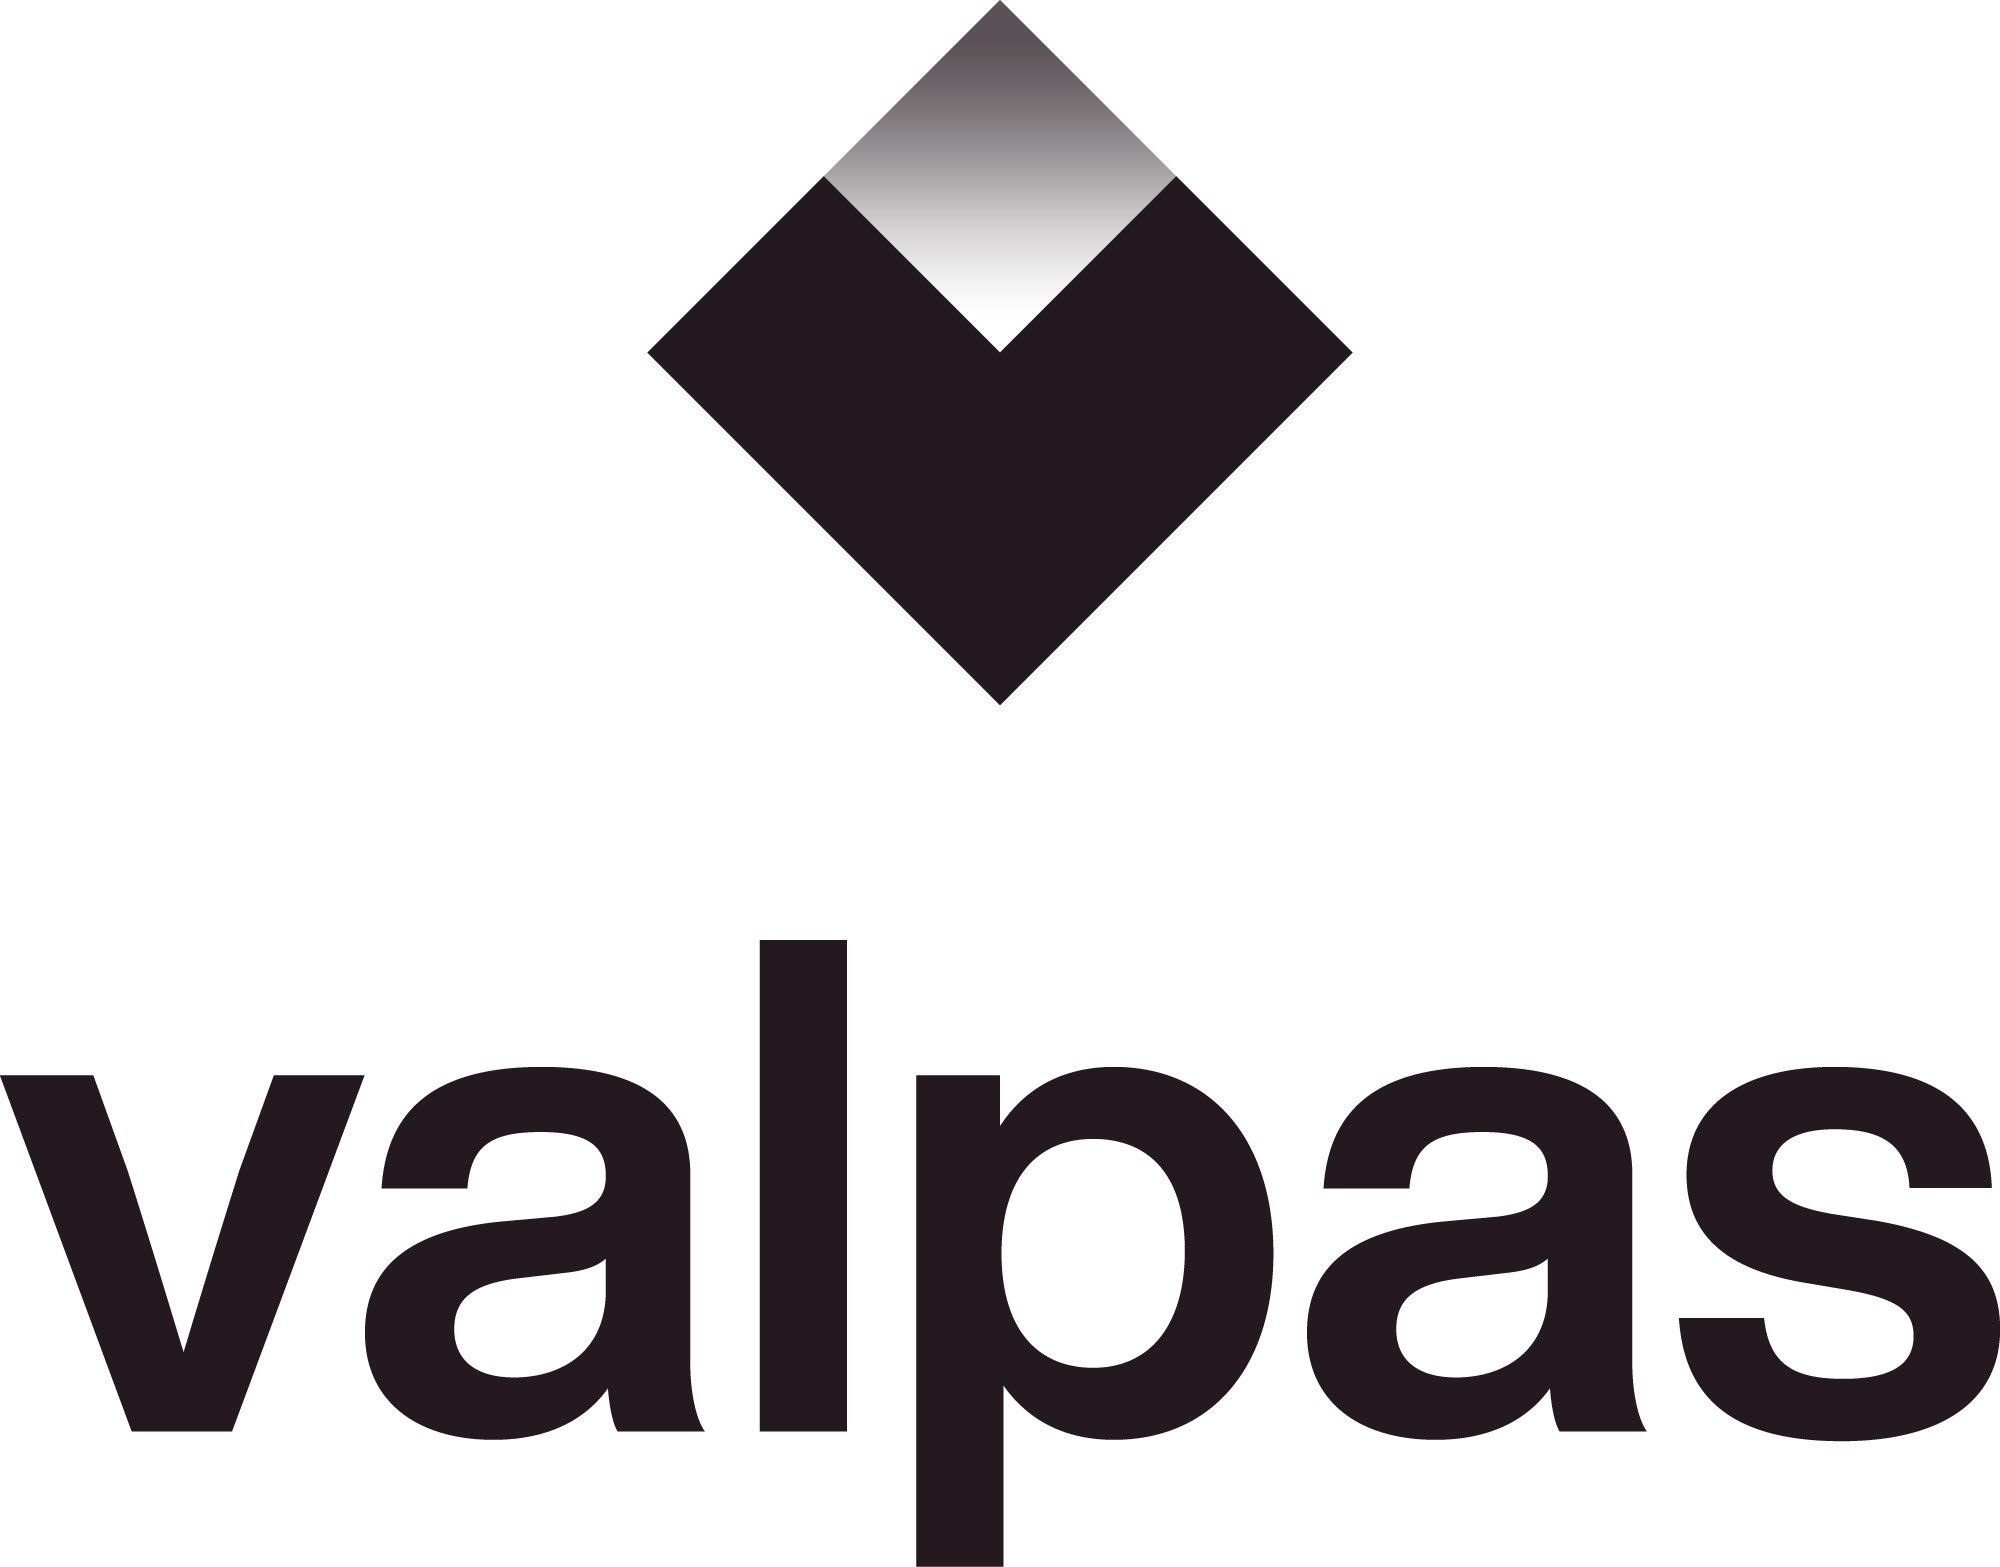 Valpas label : against bedbugs